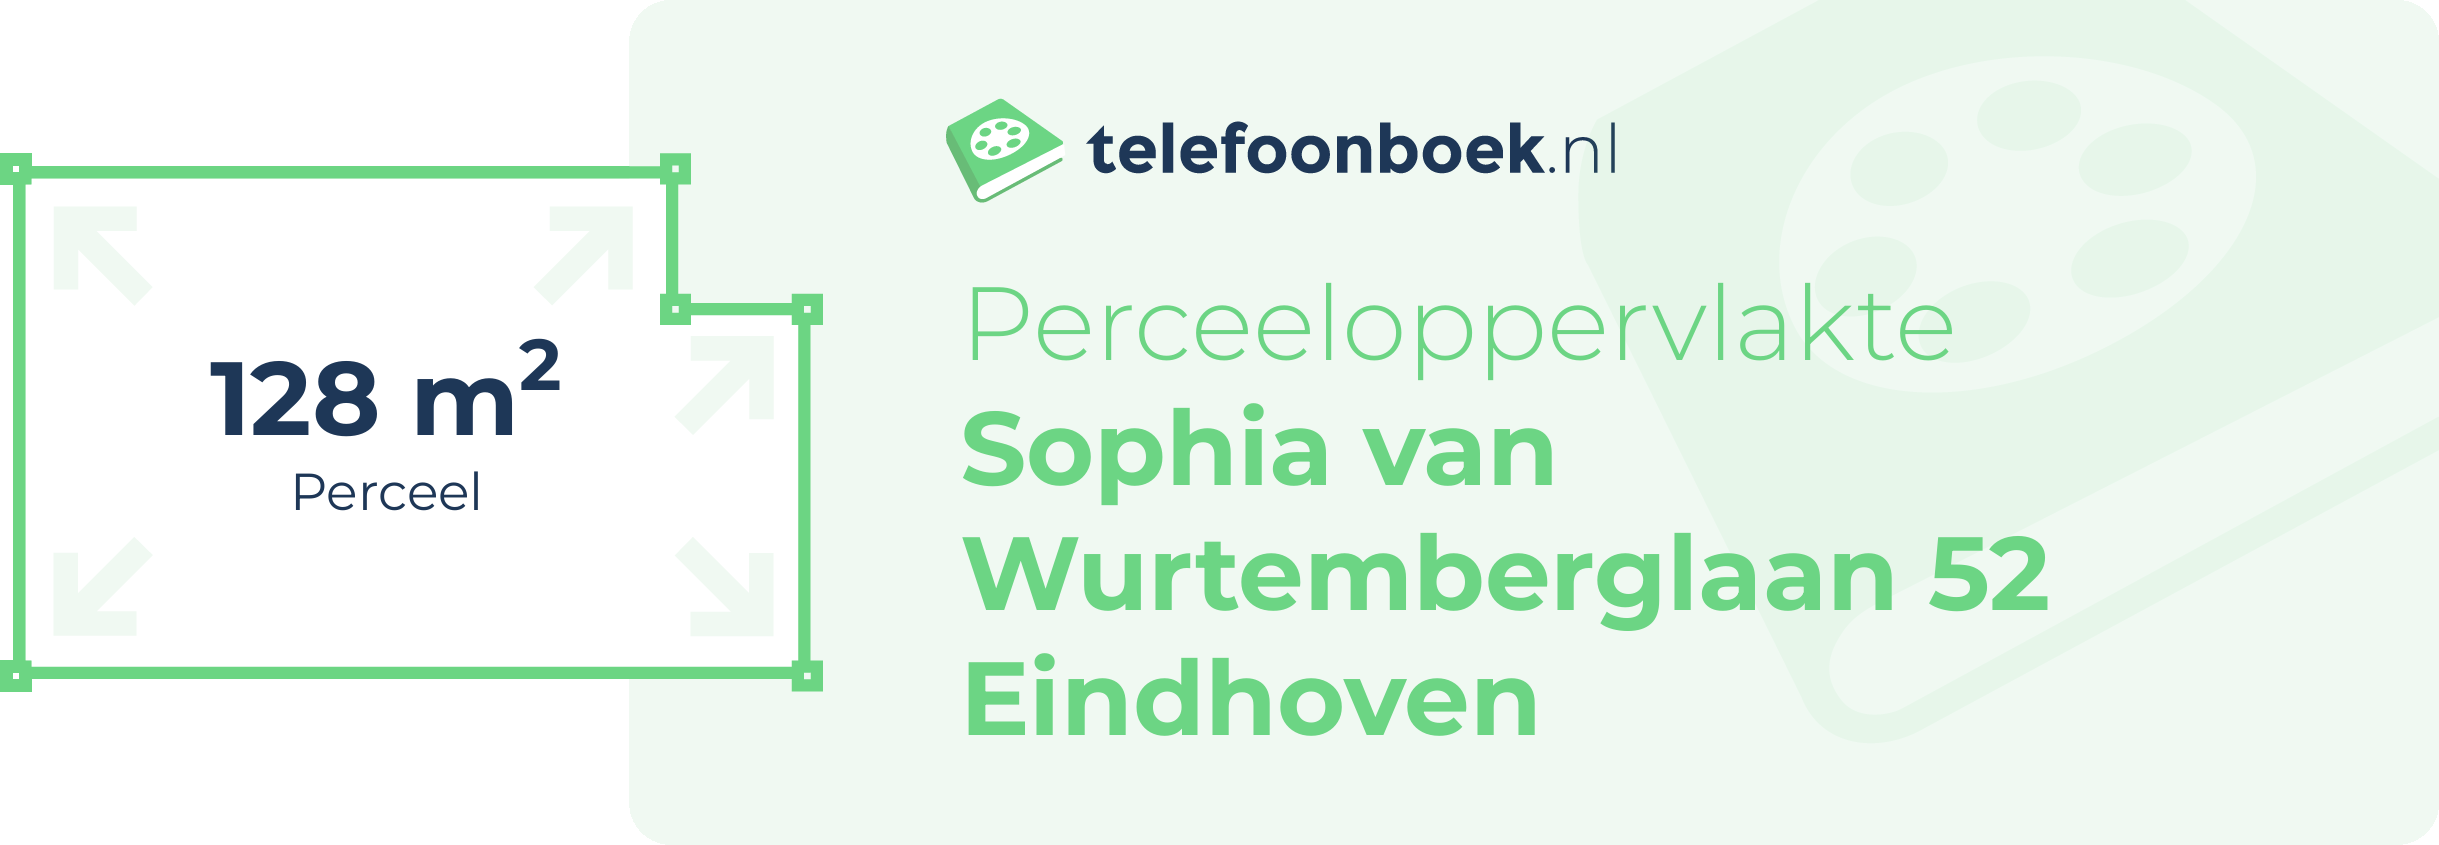 Perceeloppervlakte Sophia Van Wurtemberglaan 52 Eindhoven